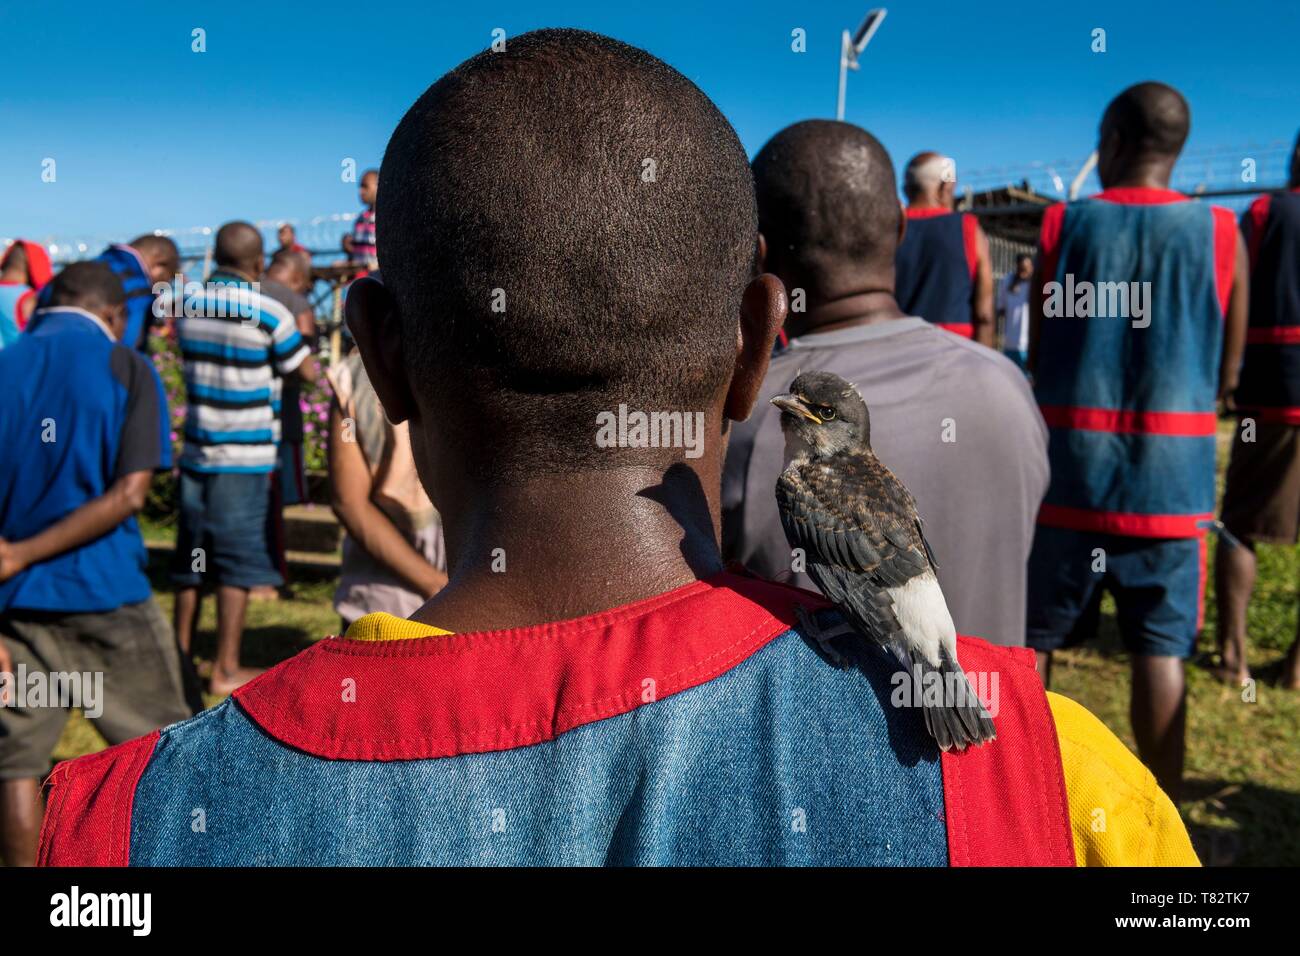 Papua-neuguinea, Golf von Papua, National Capital District, Port Moresby Stadt, bomana Gefängnis, maximale Sicherheit, prisonner mit einem zahmen Vogel Stockfoto